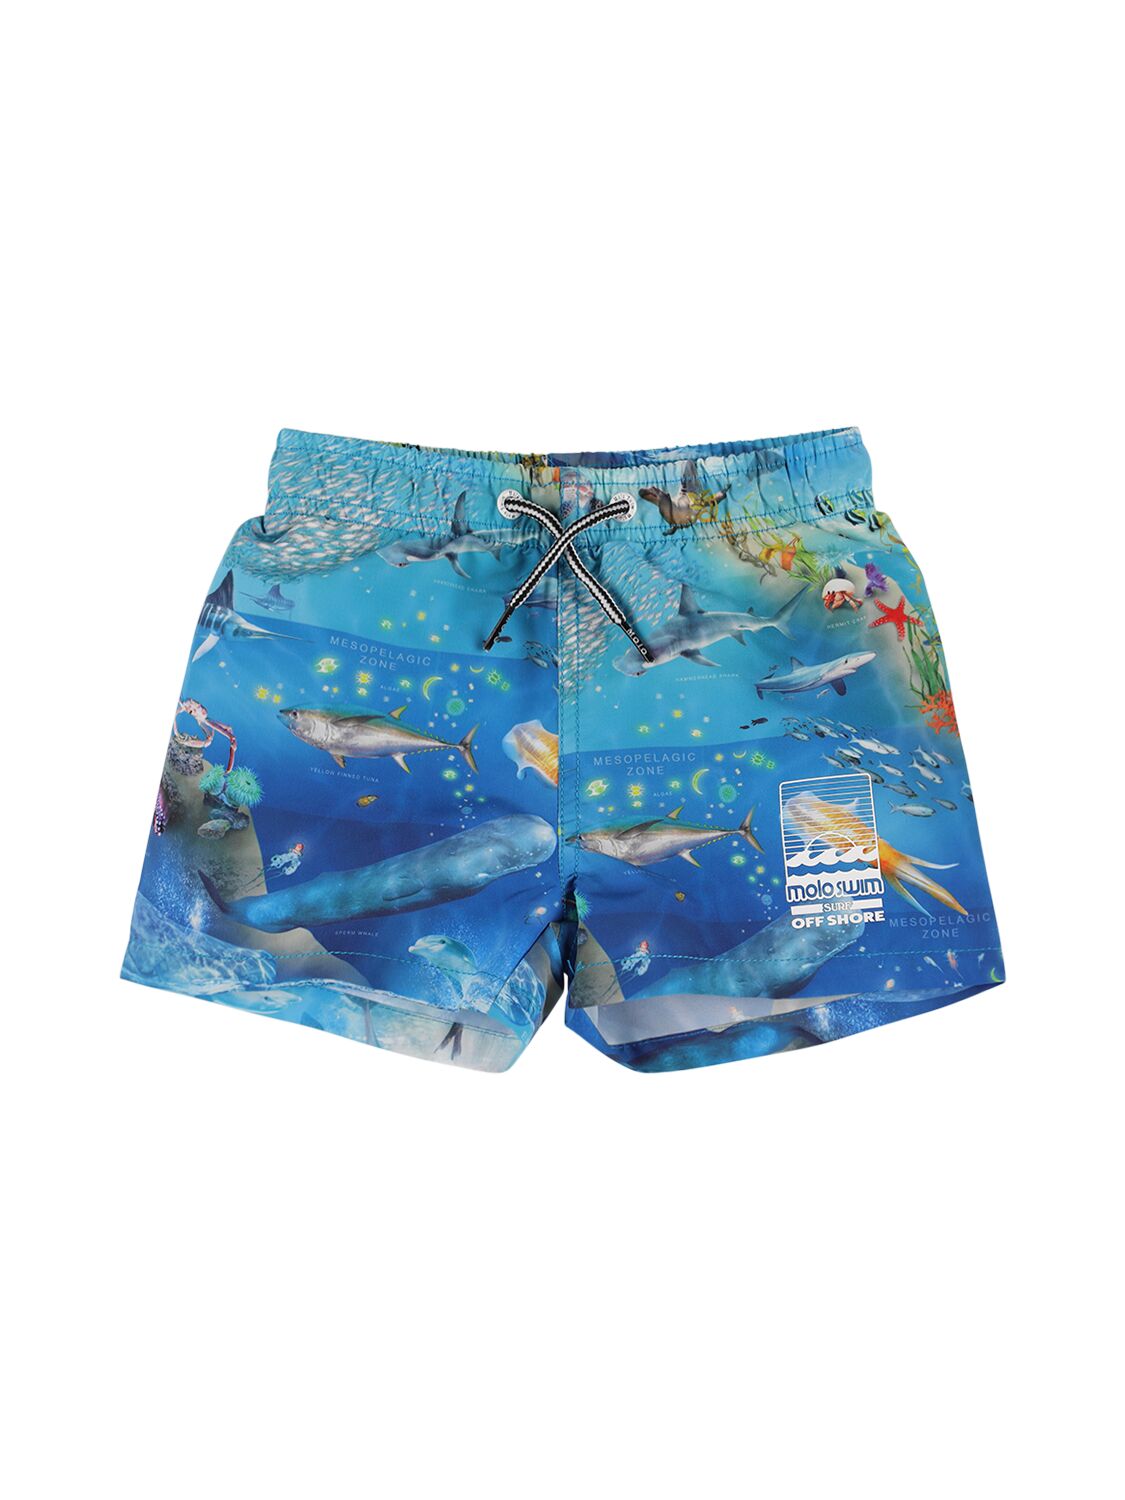 Image of Printed Recycled Nylon Swim Shorts